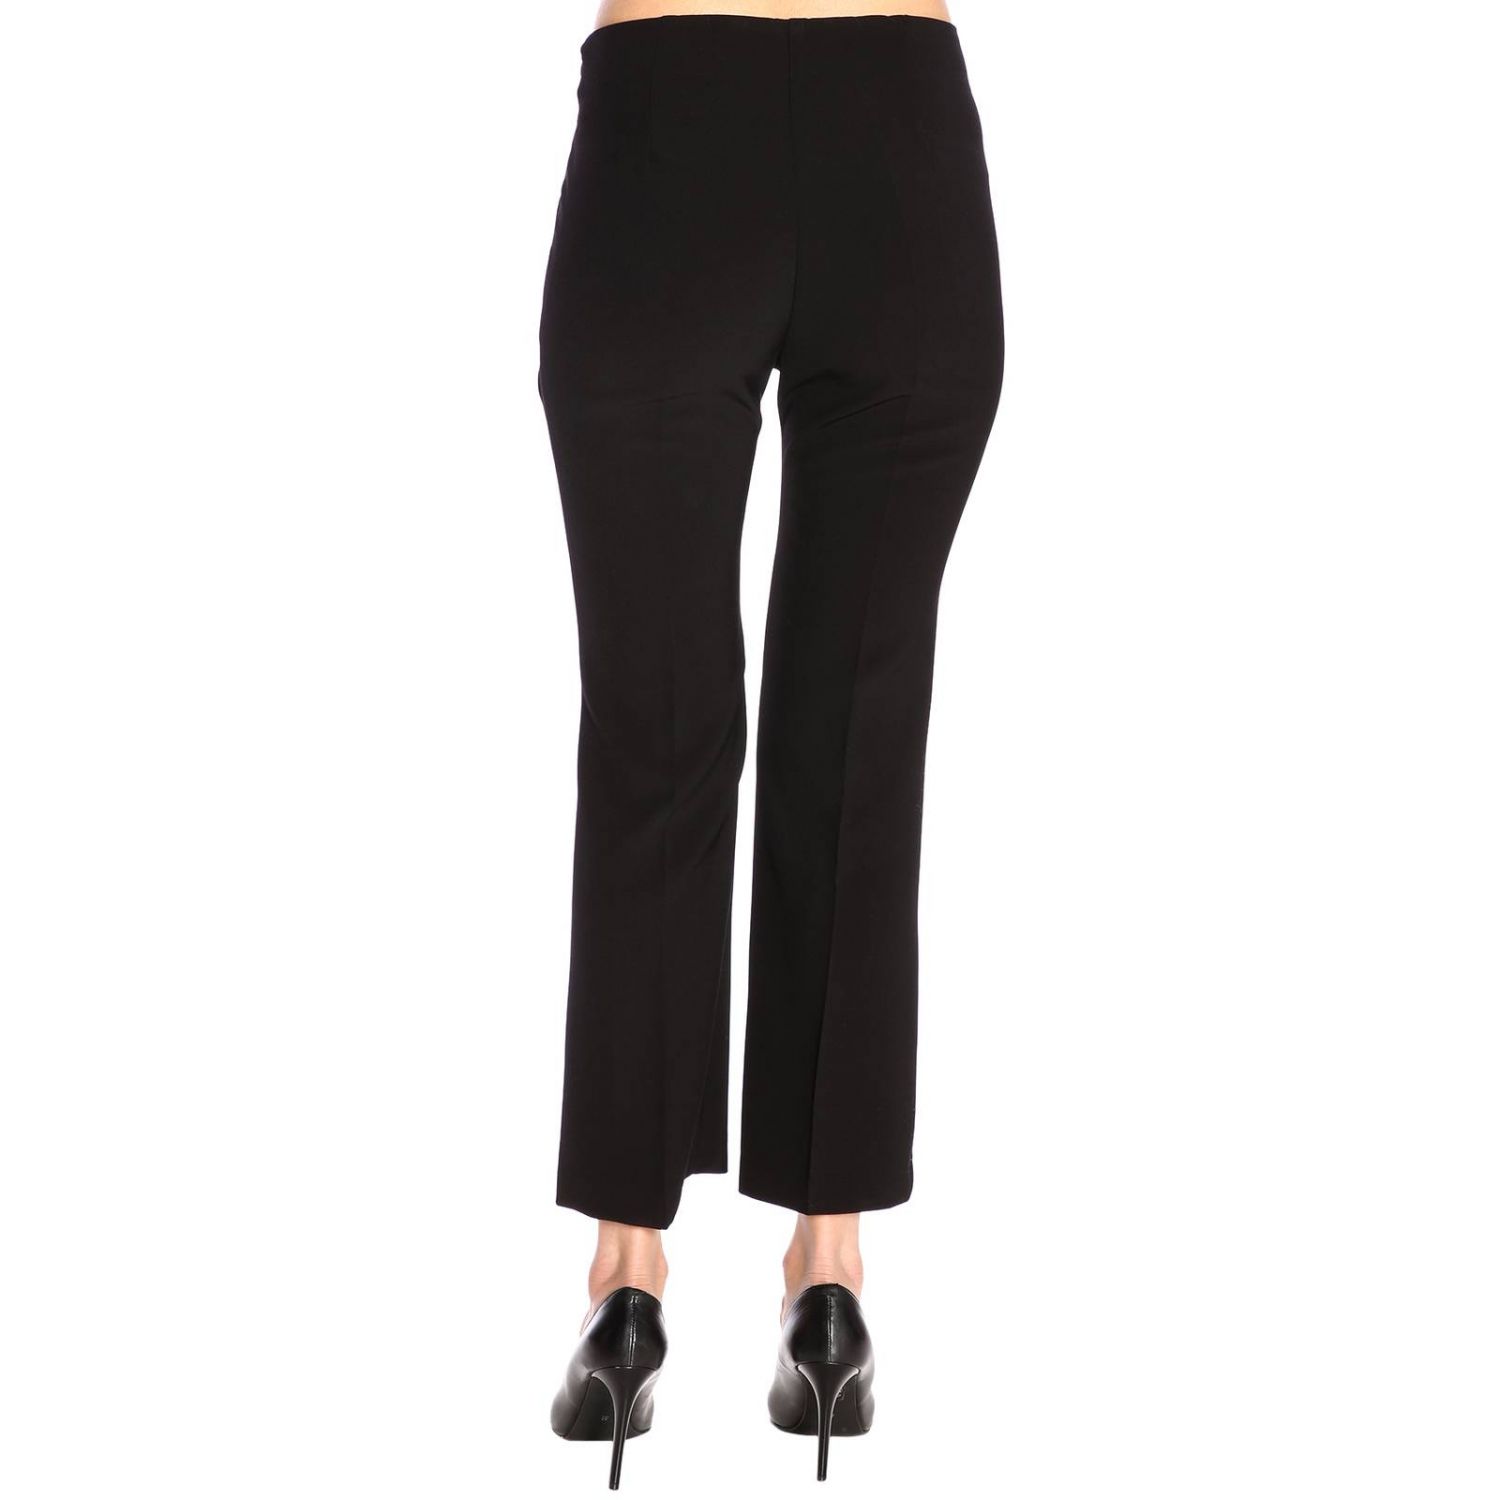 Kaos Outlet: pants for woman - Black | Kaos pants LP1CO008 online on ...